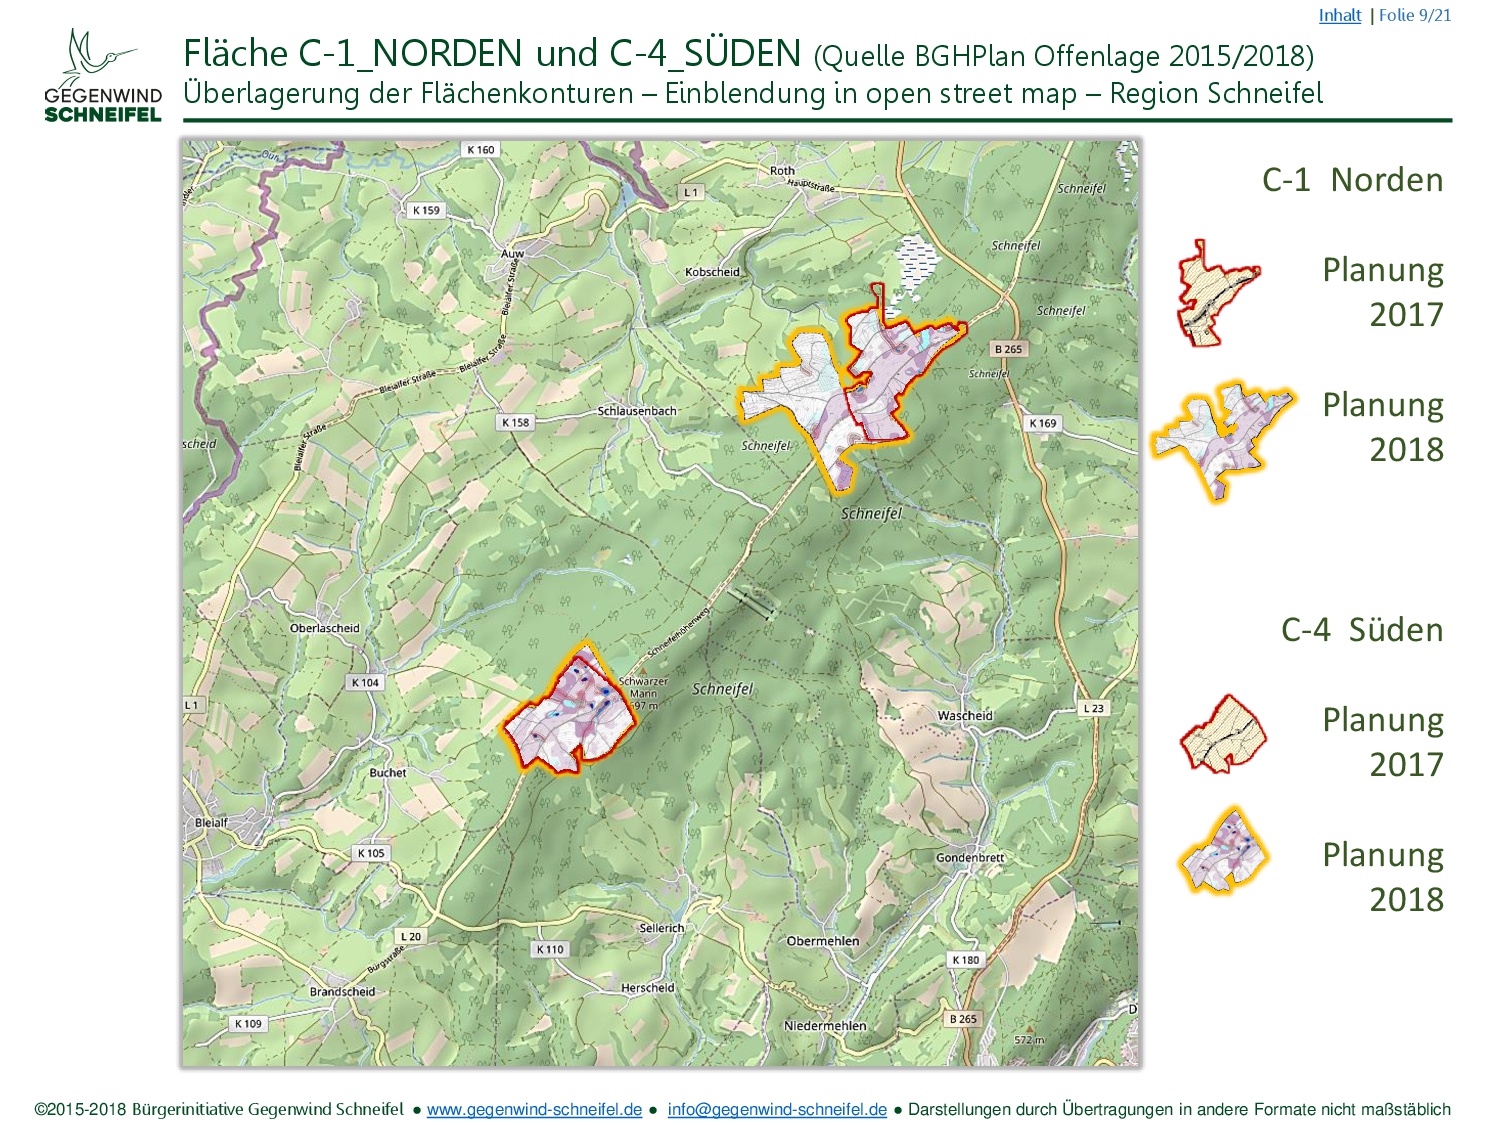 FNP Schneifel C1 C4 BiGWS C2018 (09 22) (Flaechen C1 und C4 2018 open street map)